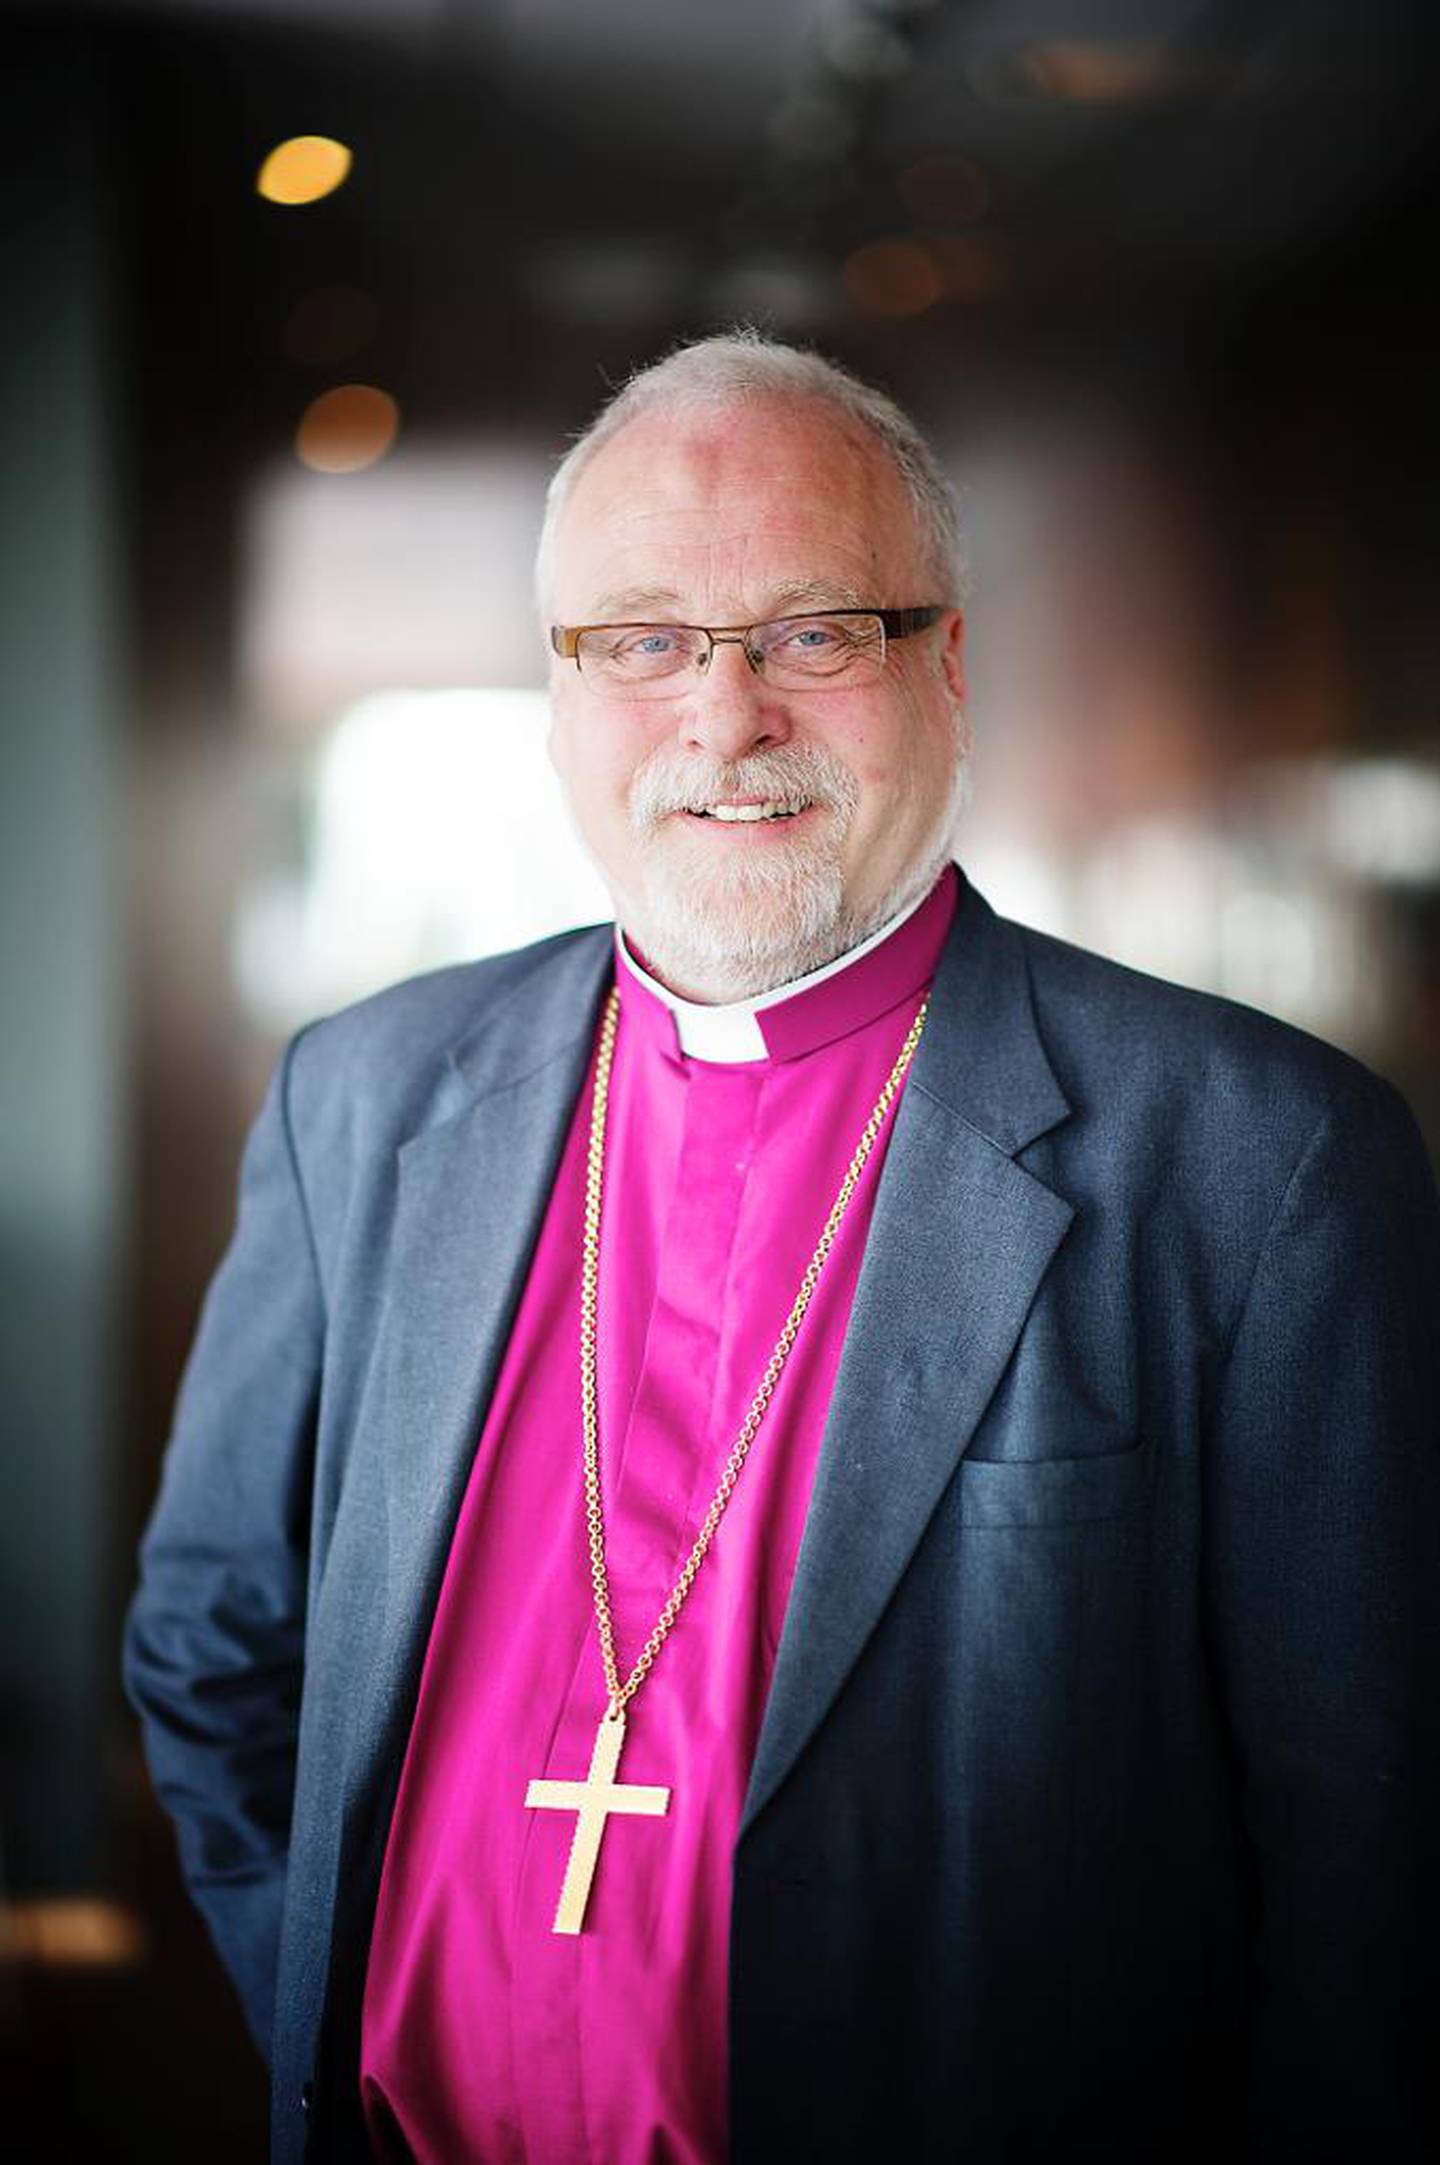 I min tradisjon er helliggjørelse en prosess der mennesket gjenfinner hva det innebærer at vi er skapt i Guds bilde, sier Atle Sommerfeldt, biskop i Borg.